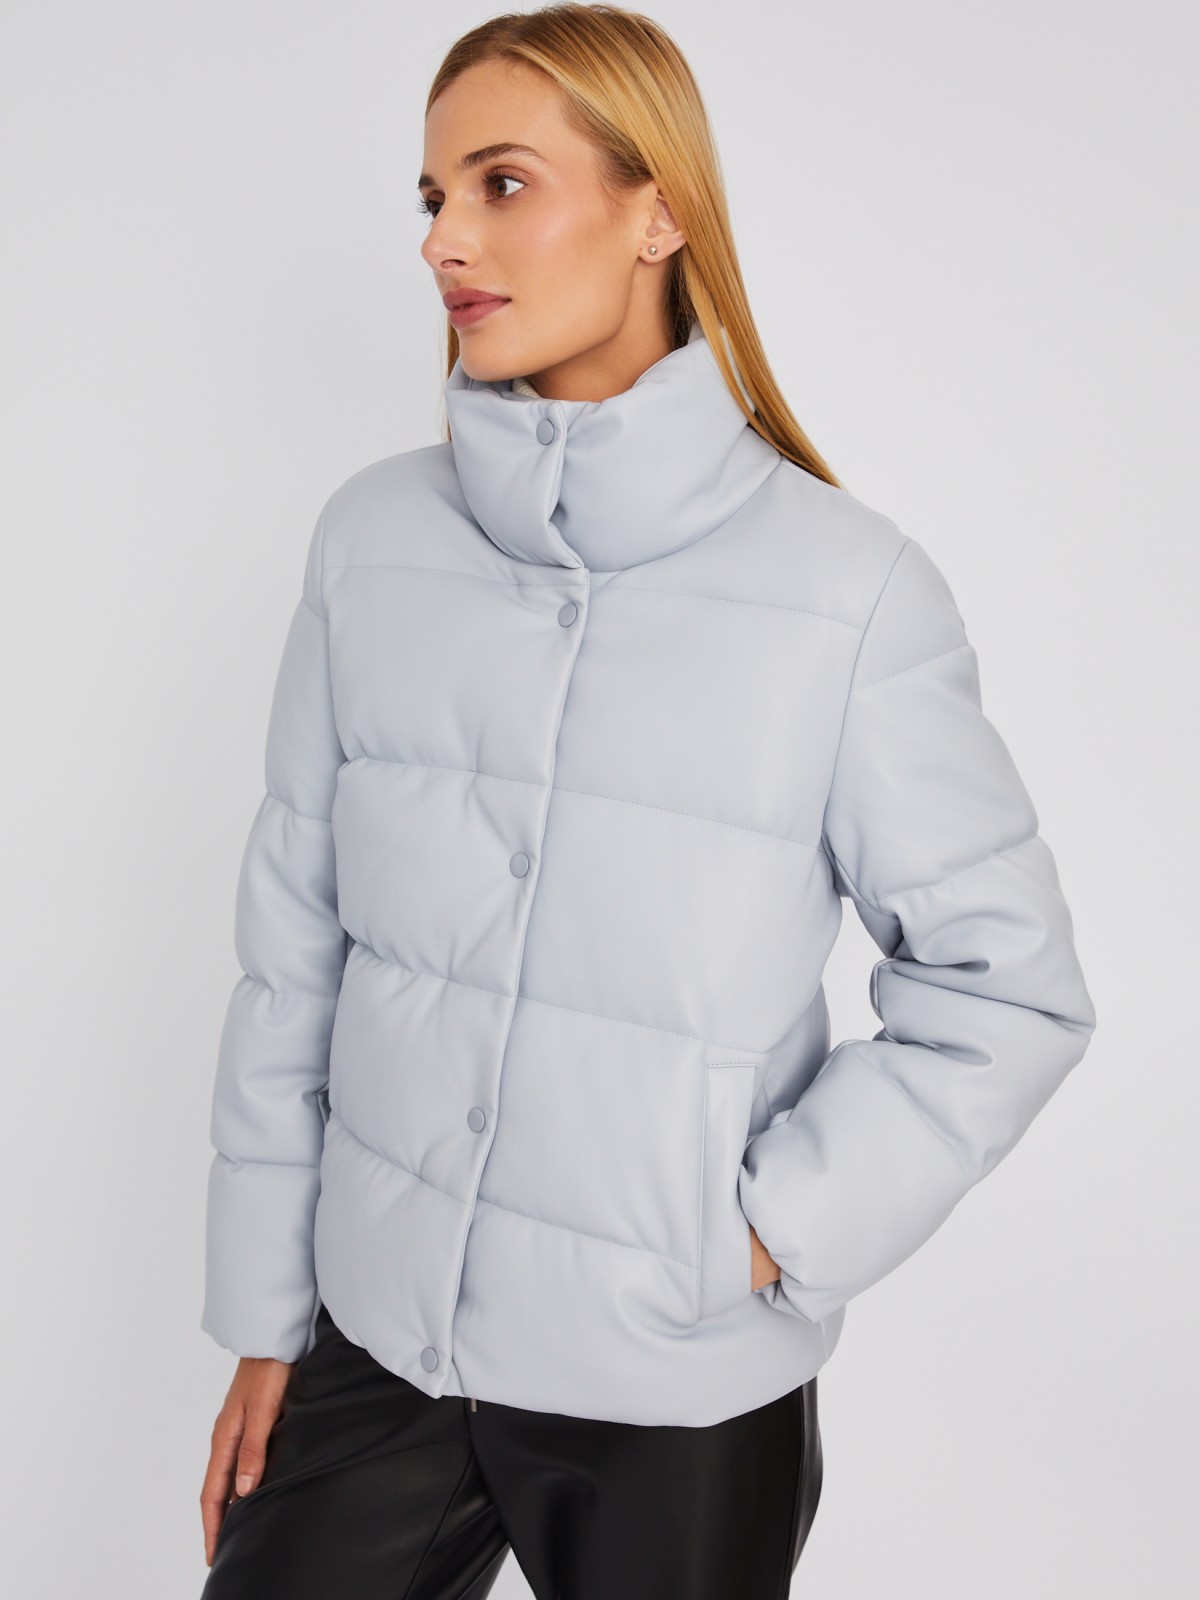 Тёплая стёганая дутая куртка из экокожи с высоким воротником zolla 023335102094, цвет светло-голубой, размер L - фото 3